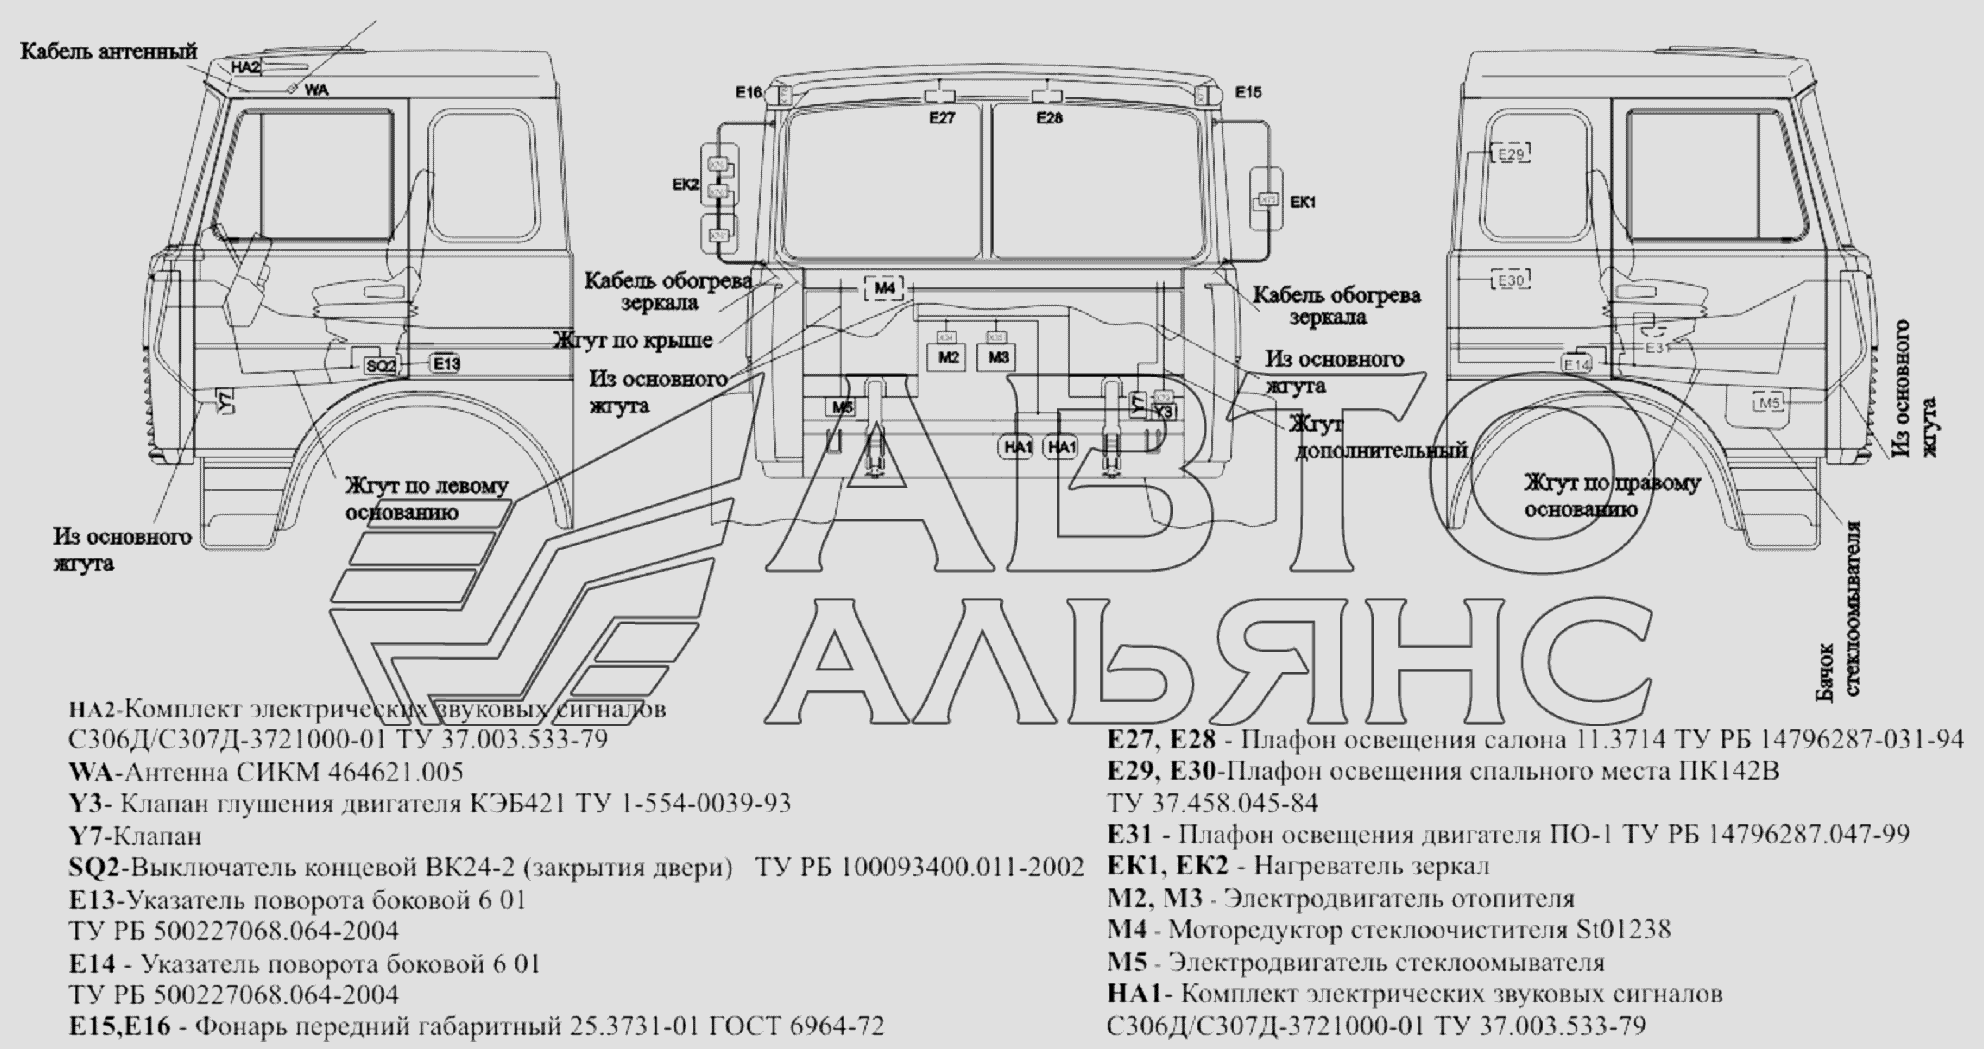 Расположение разъемов и элементов электрооборудования на большой кабине автомобилей МАЗ-651705